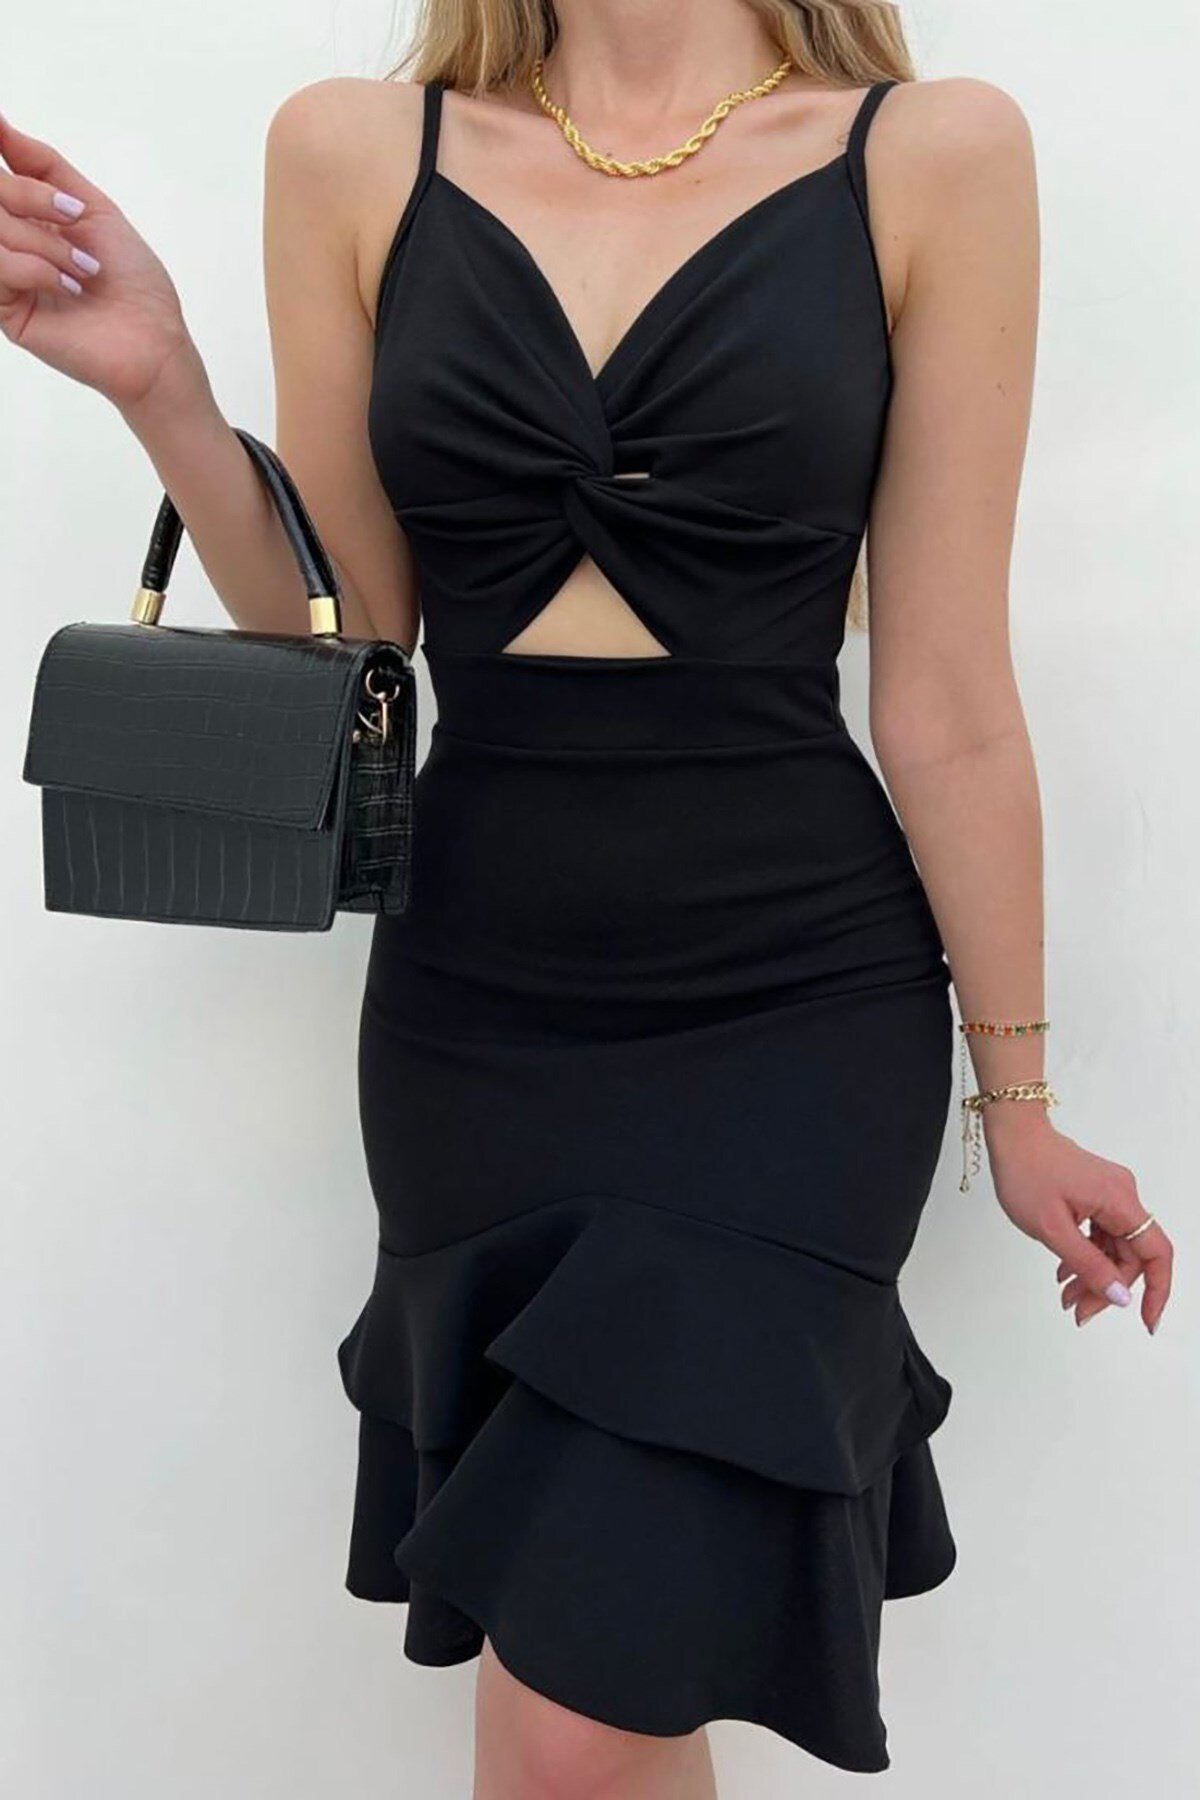 Deafox Askılı Siyah Göbek Üçgen Detaylı Volanlı Mini Elbise